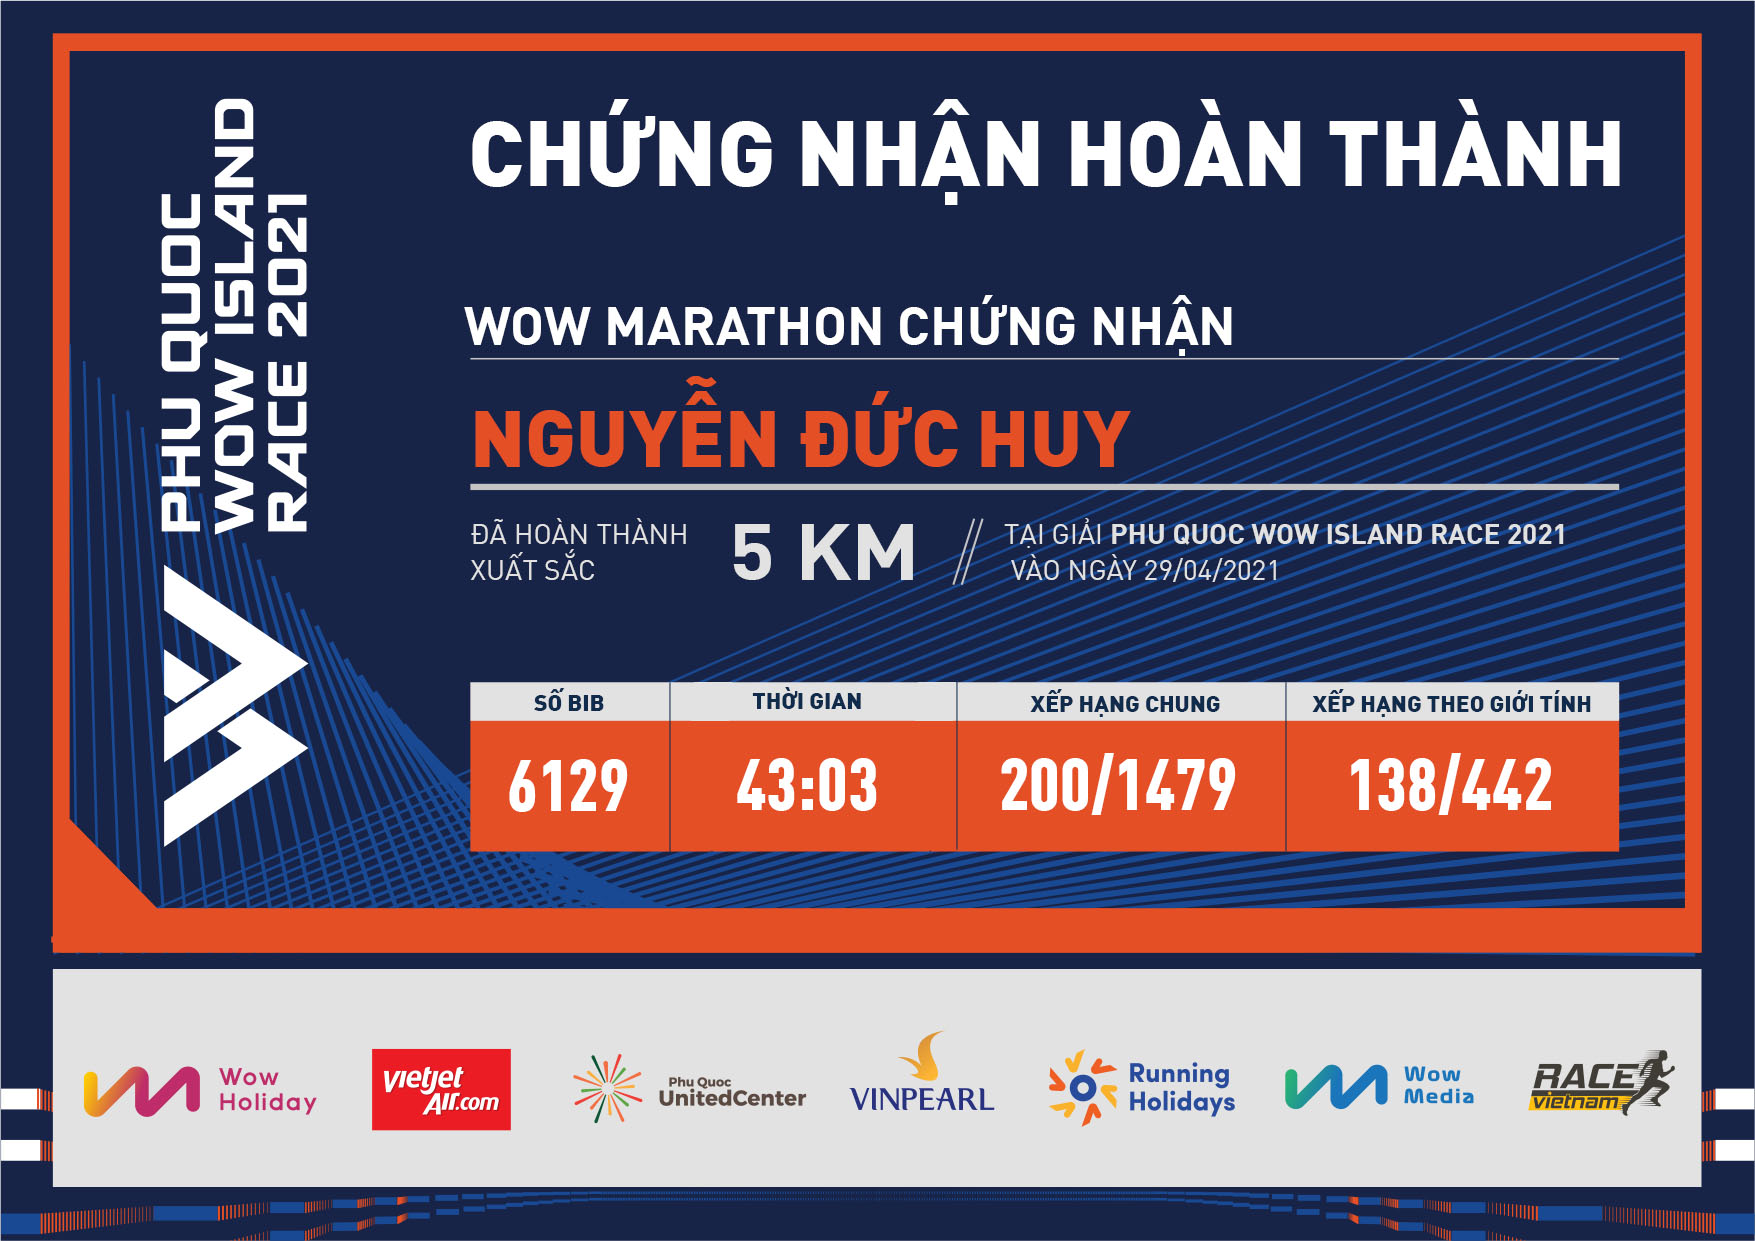 6129 - Nguyễn Đức Huy